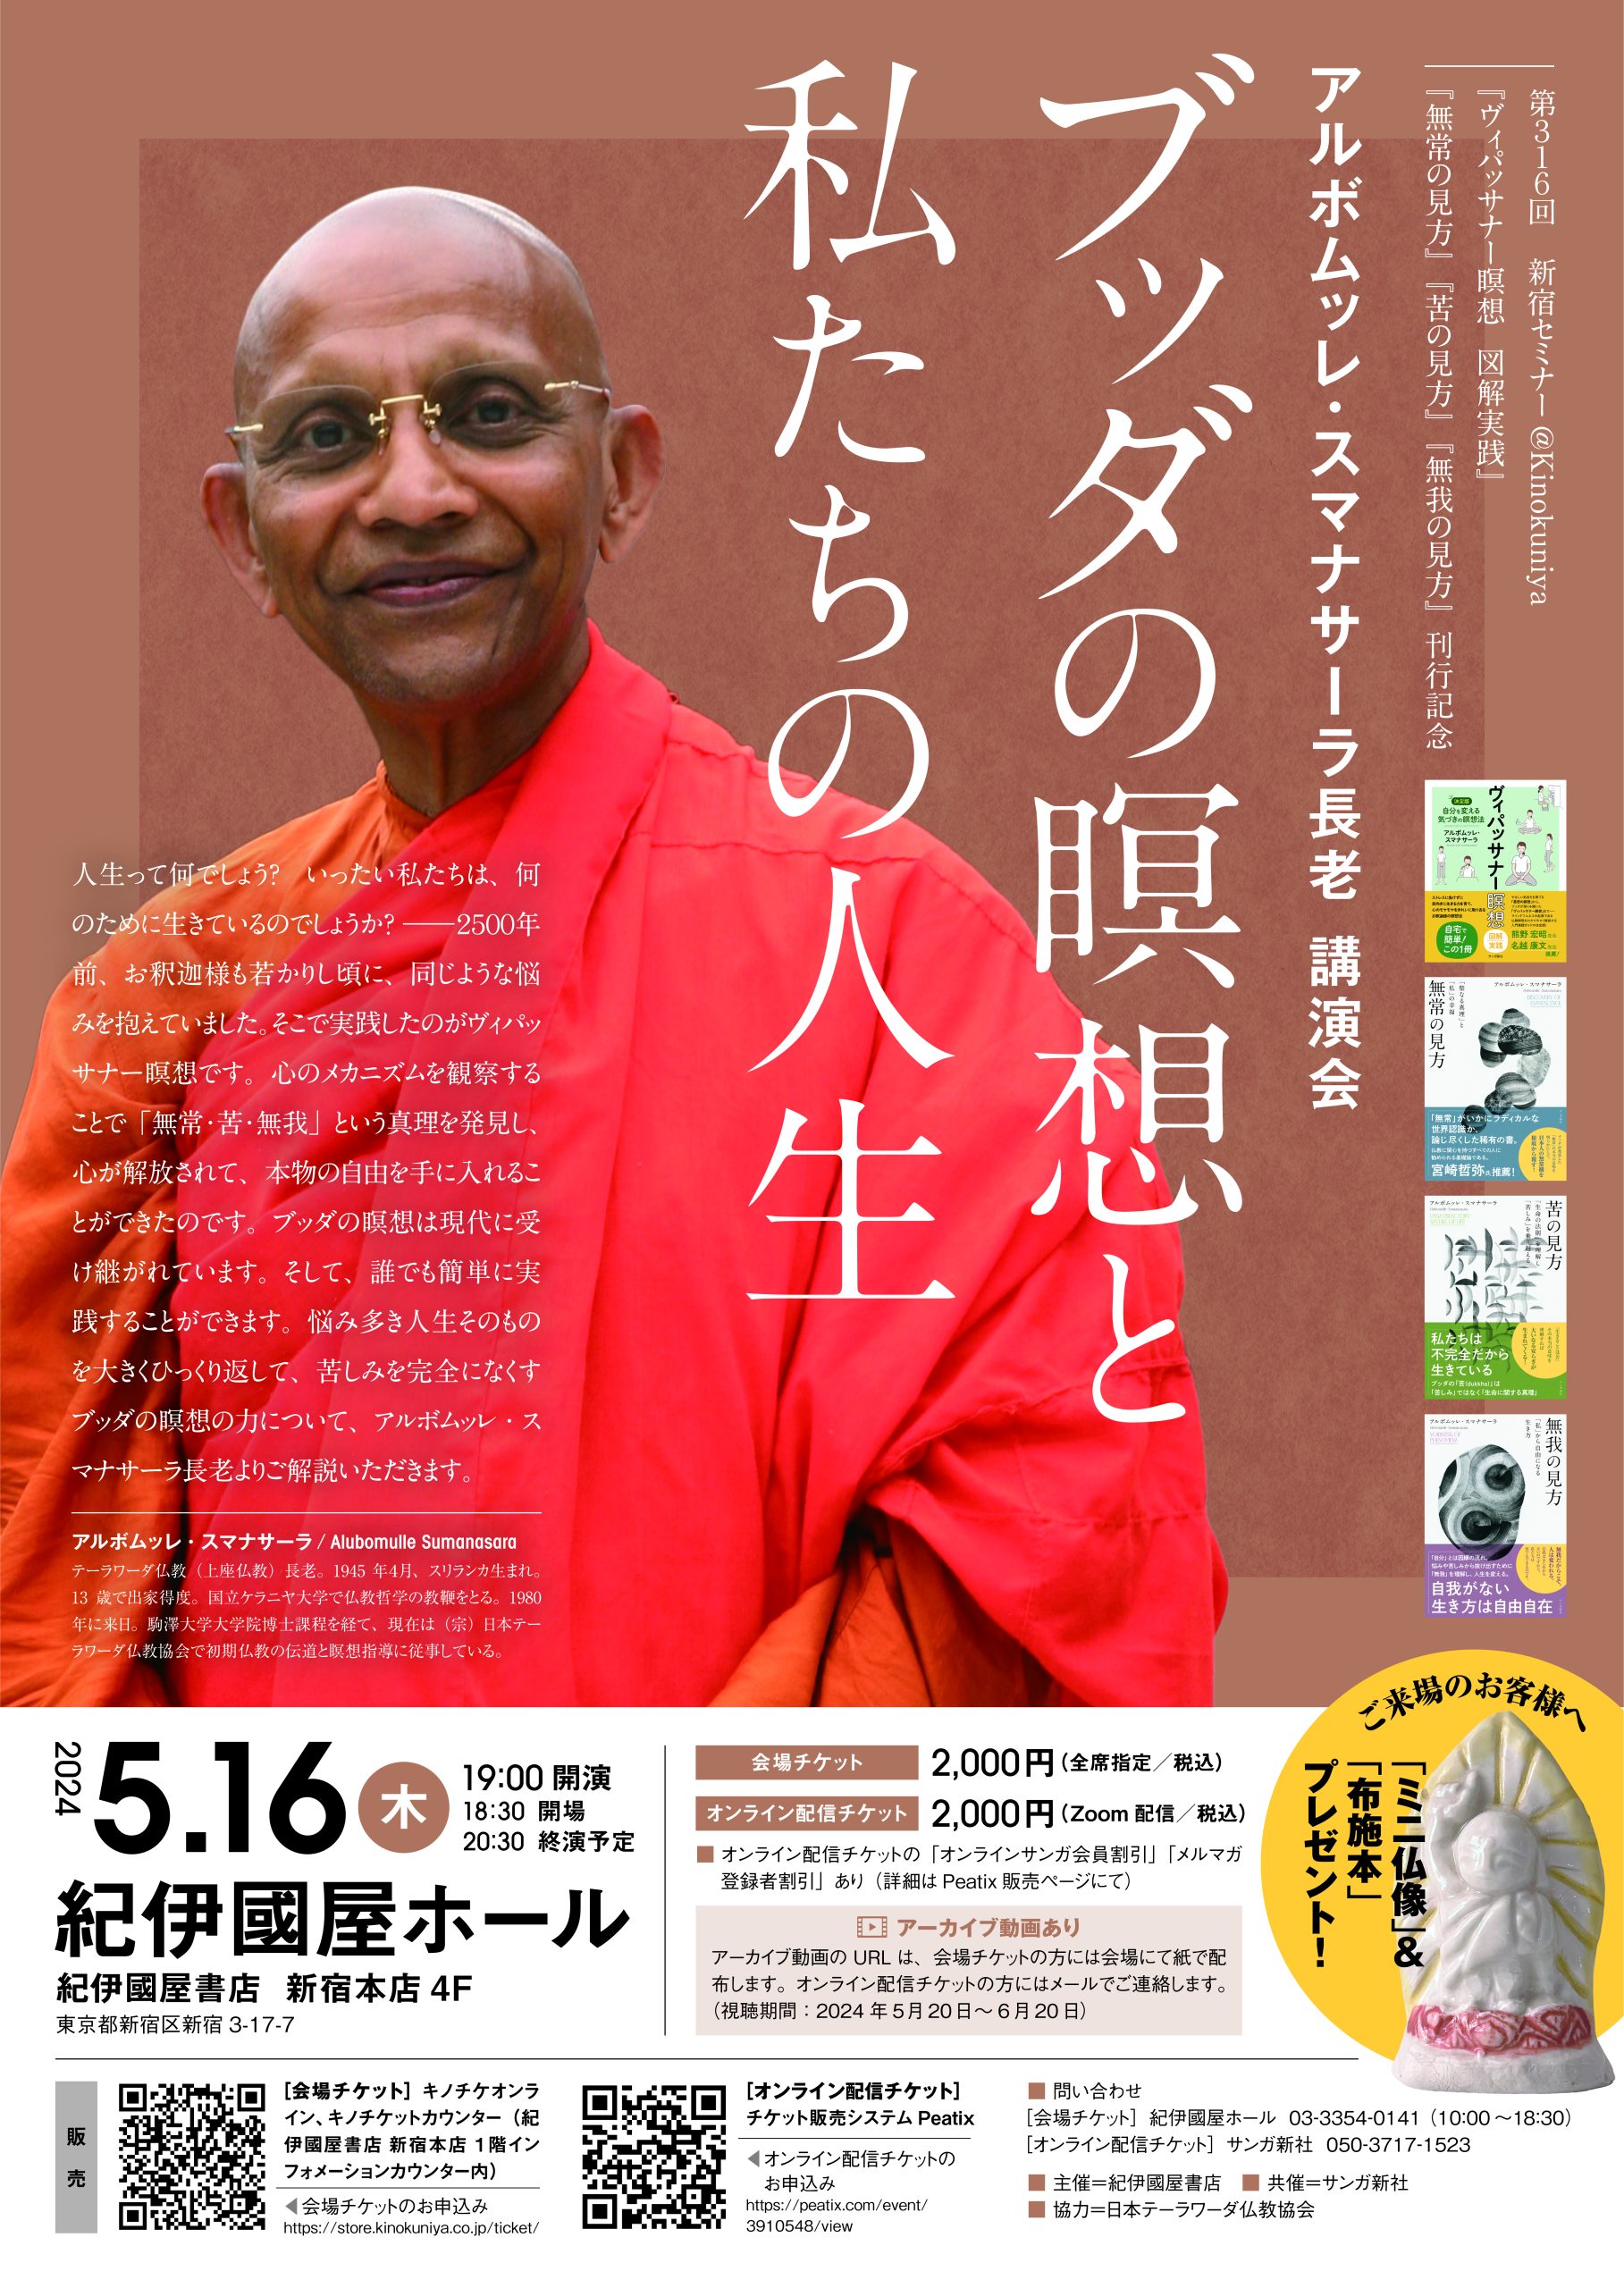 紀伊國屋書店：〈第316回新宿セミナー@Kinokuniya〉 『ヴィパッサナー瞑想 図解実践』『無常の見方』『苦の見方』『無我の見方』刊行記念  アルボムッレ・スマナサーラ長老 講演会  ブッダの瞑想と私たちの人生